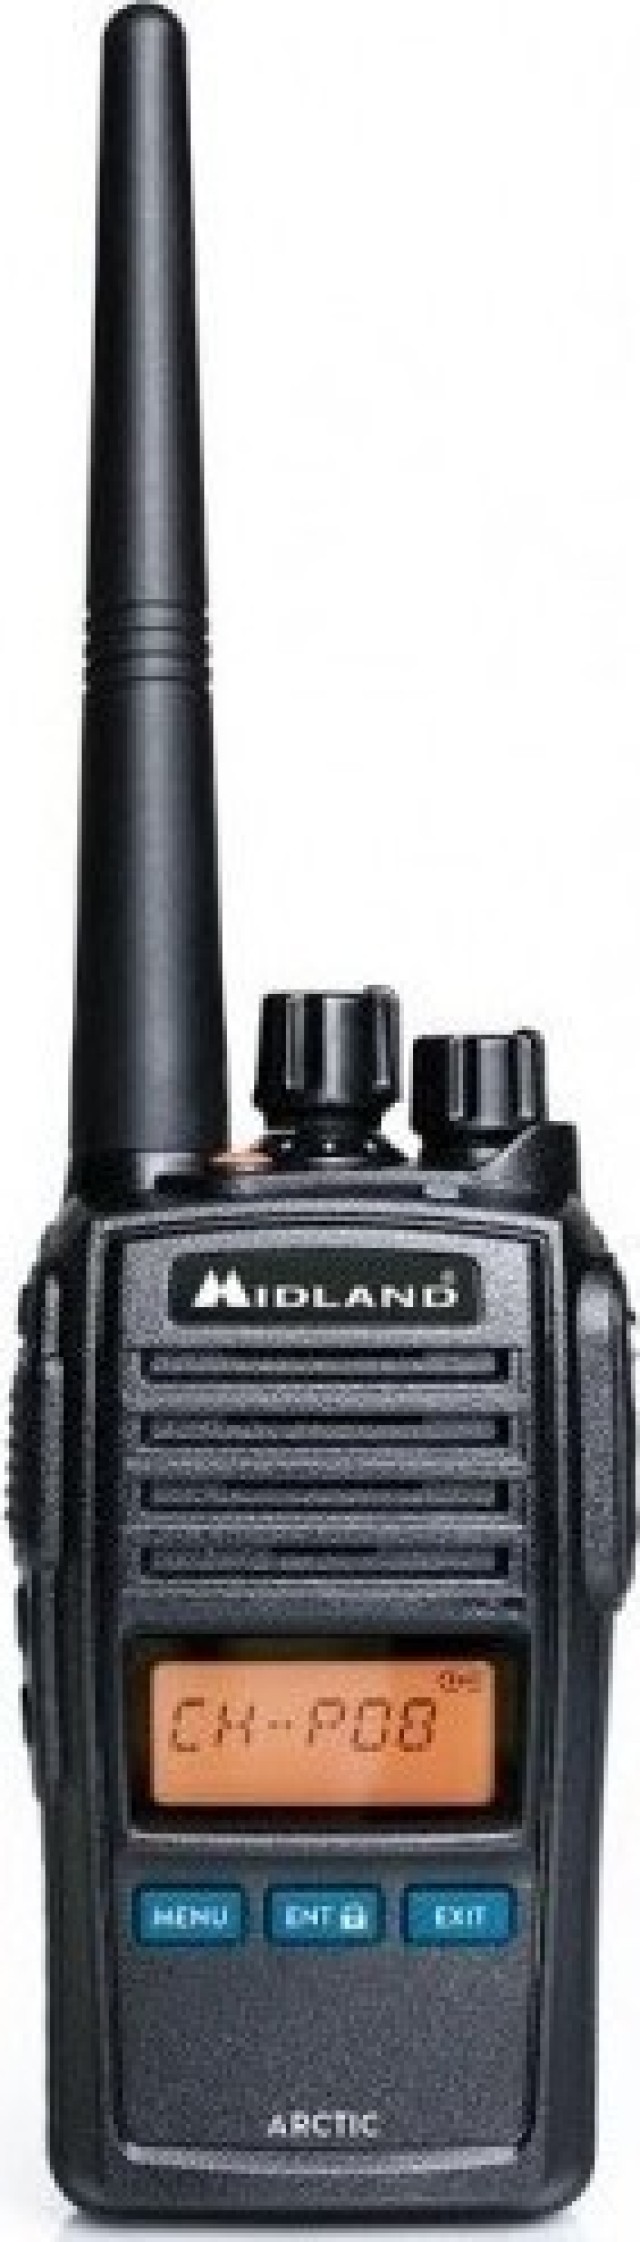 Transceptor marino Midland ARCTIC de 5 vatios VHF